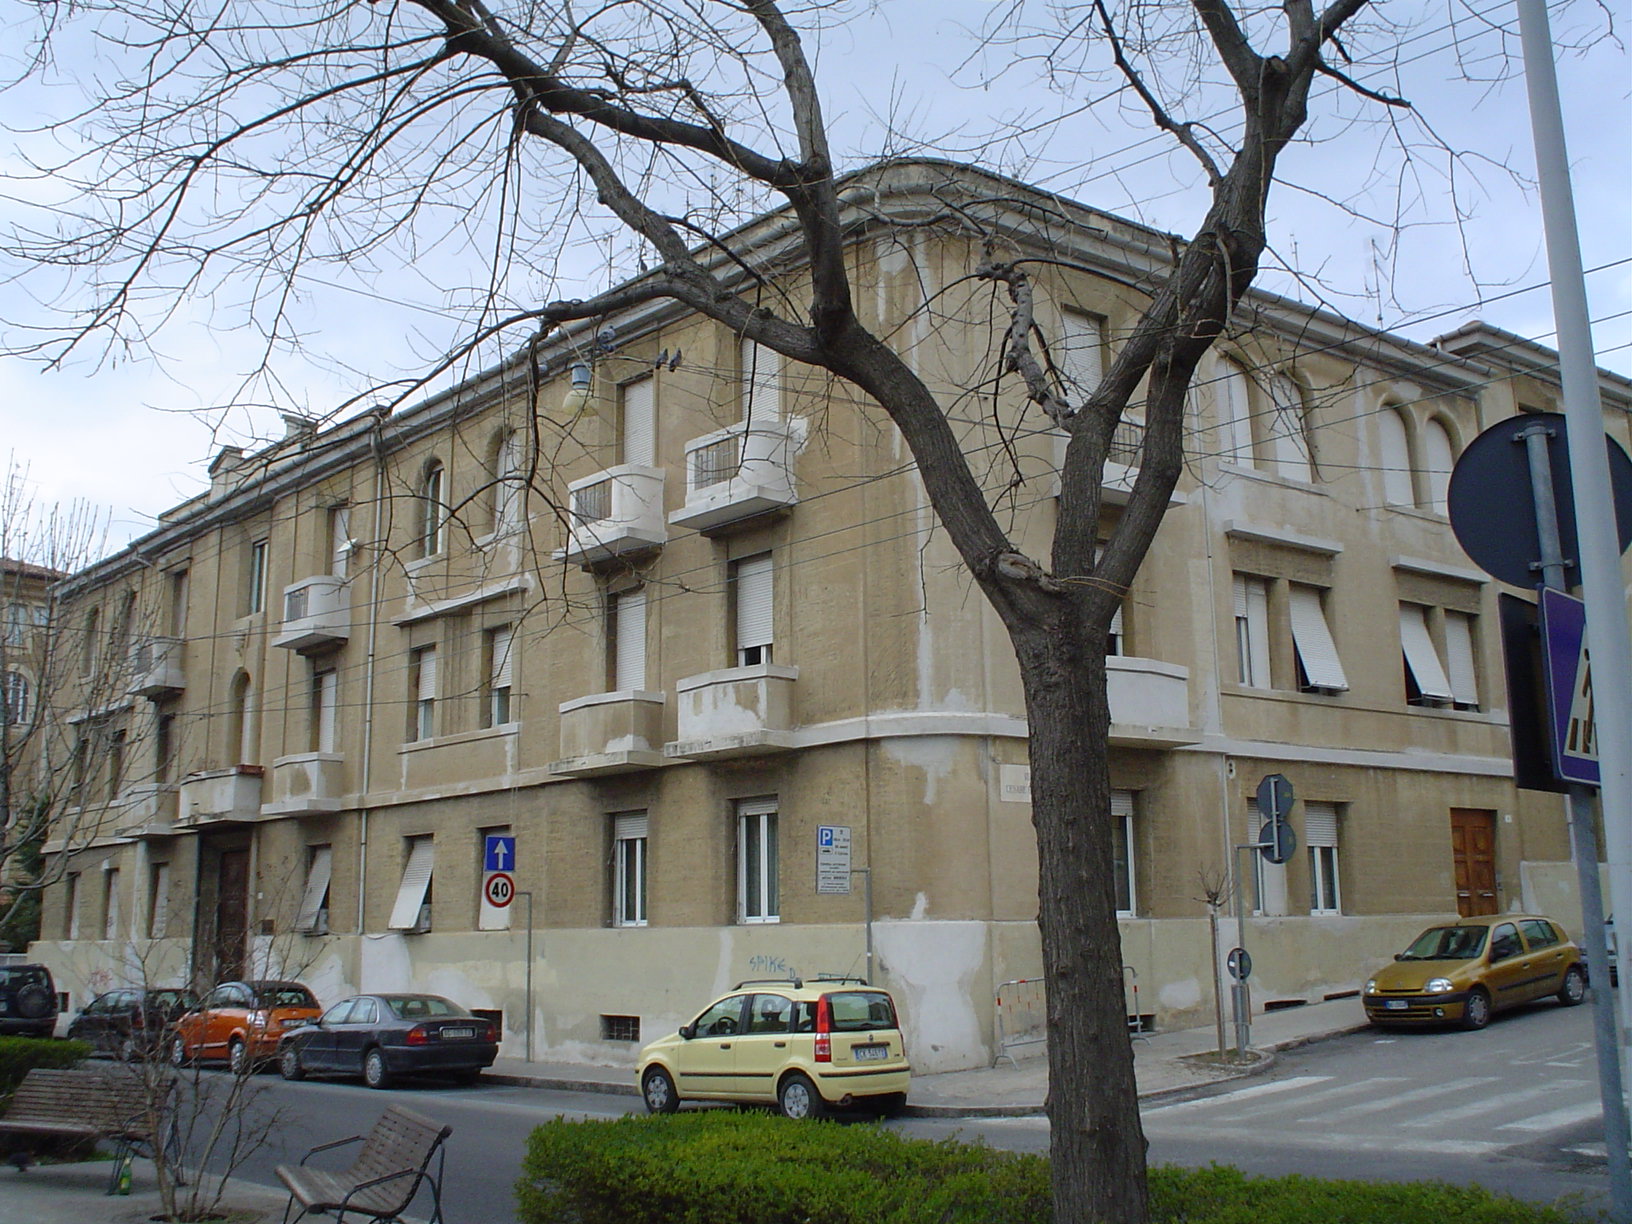 Palazzo in stile razionalista (palazzo) - Ancona (AN) 